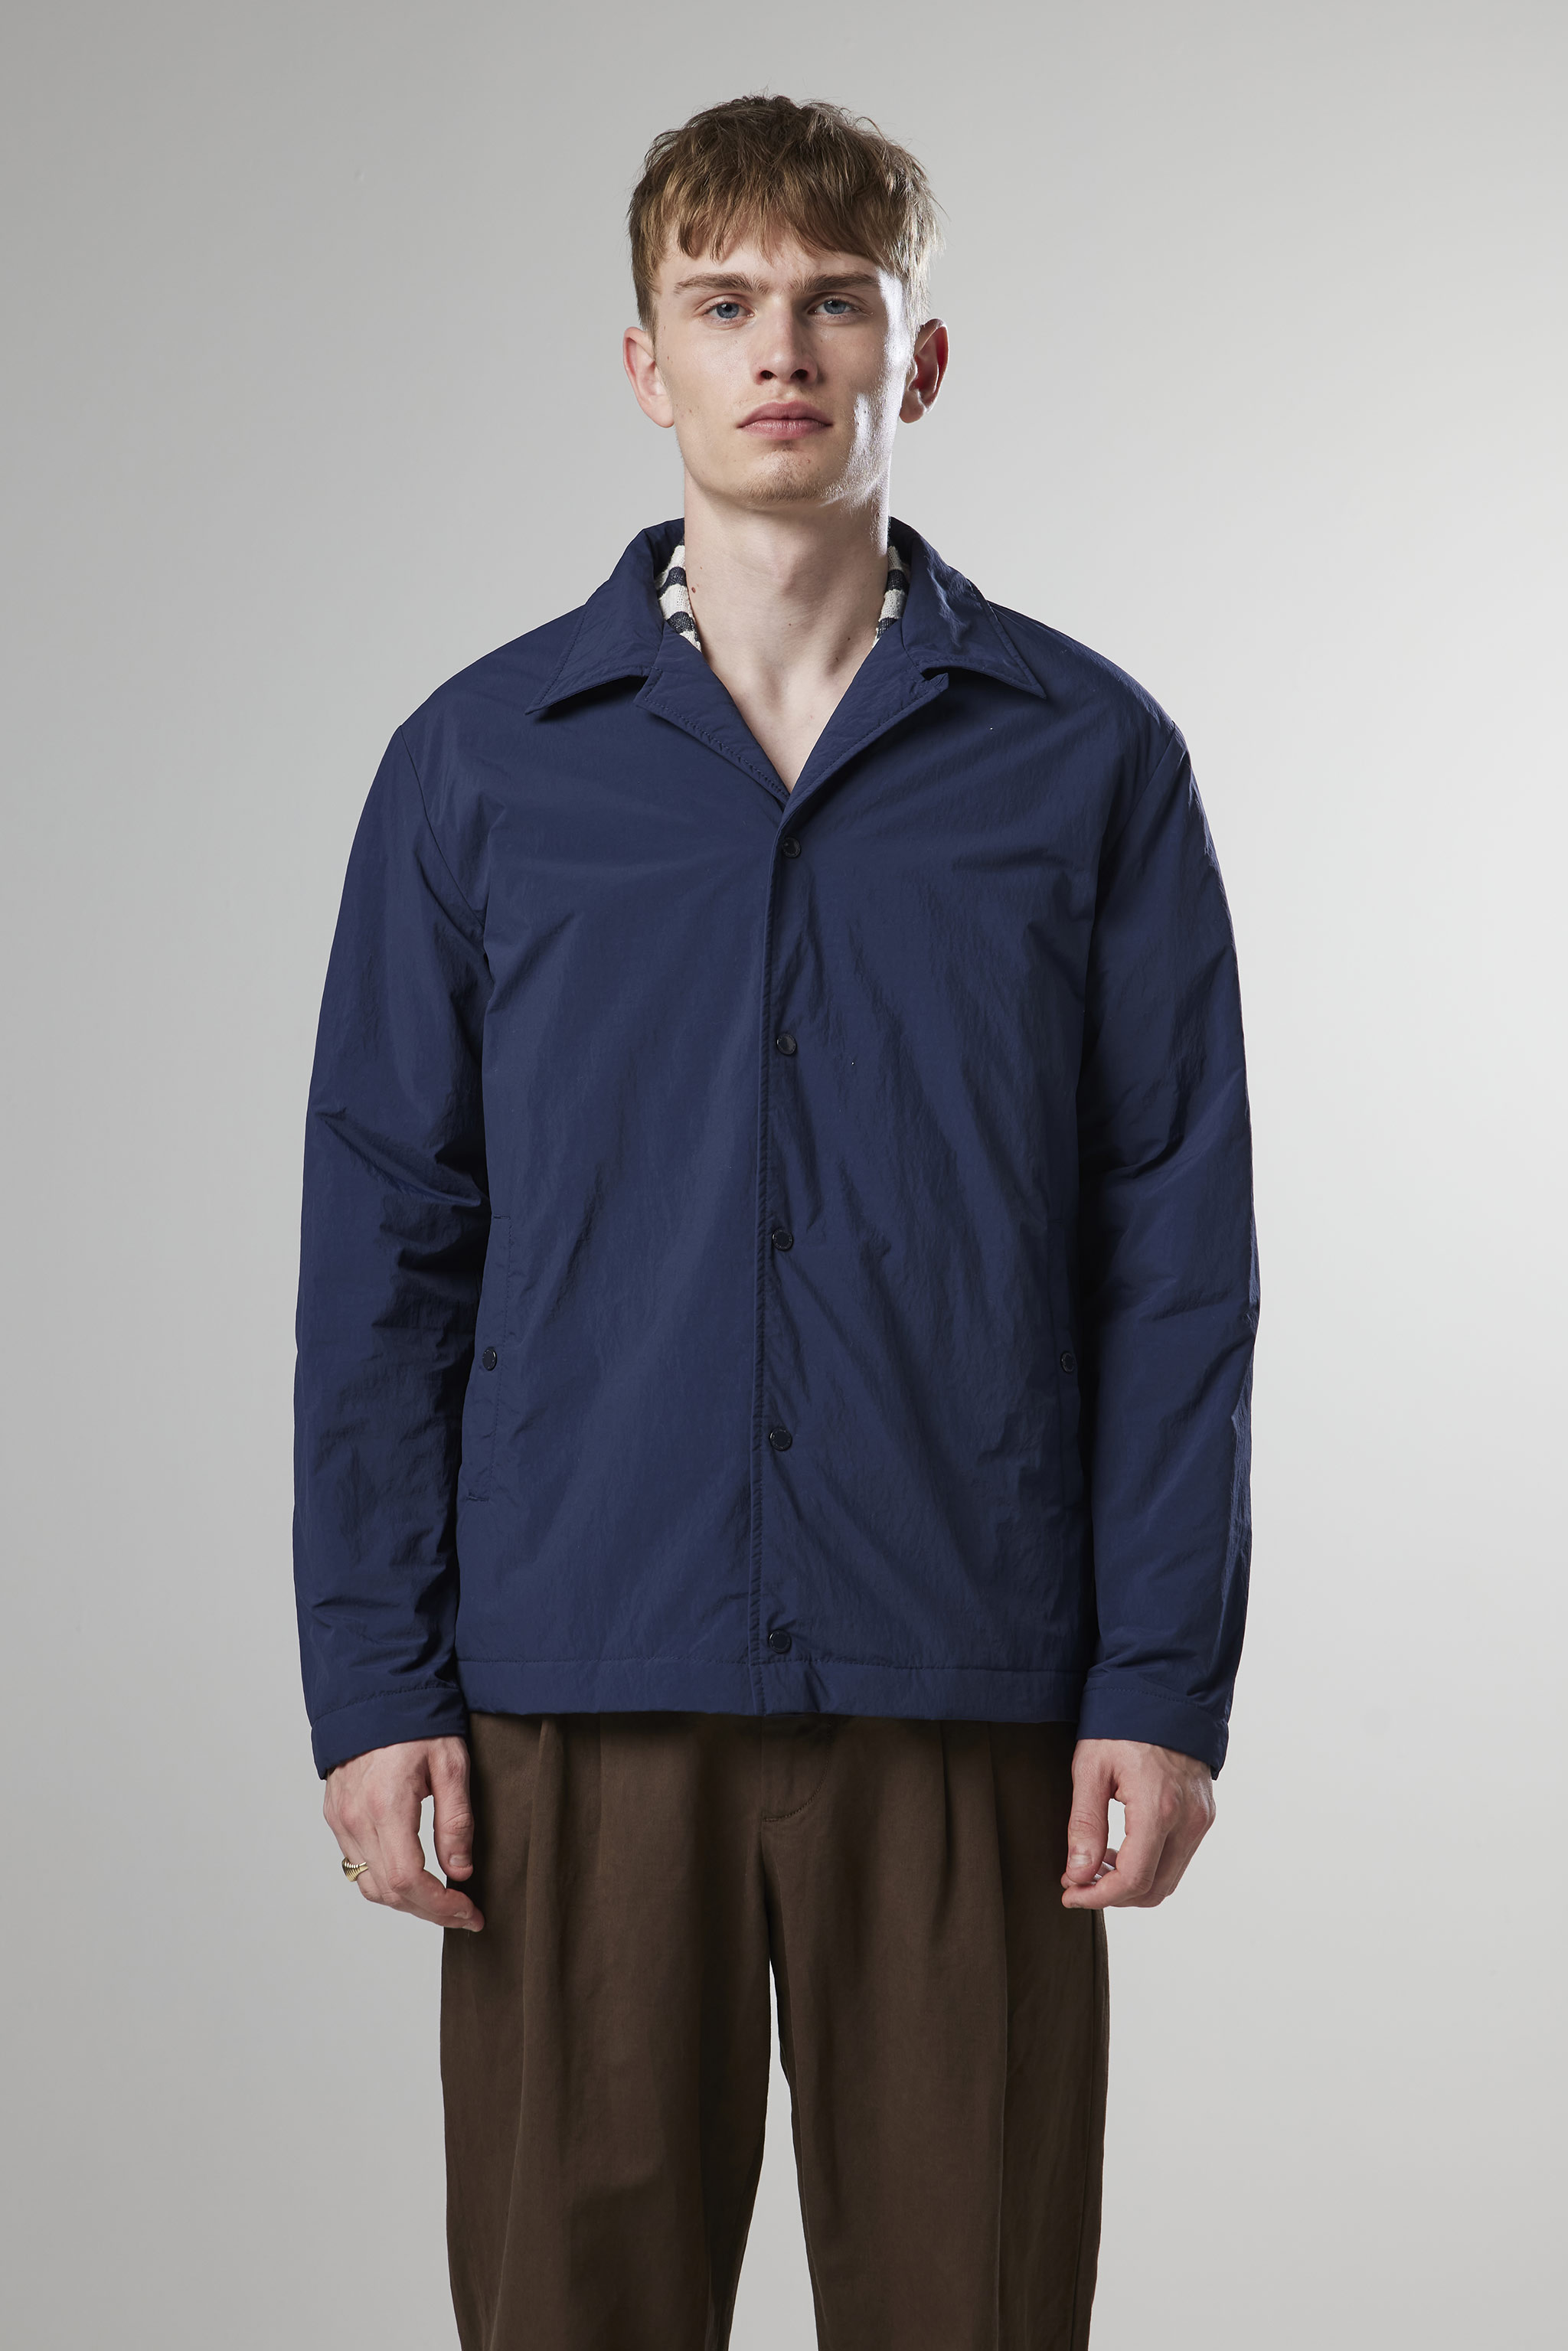 Clyde 8280 men's jacket - Blue - Buy online at NN.07®